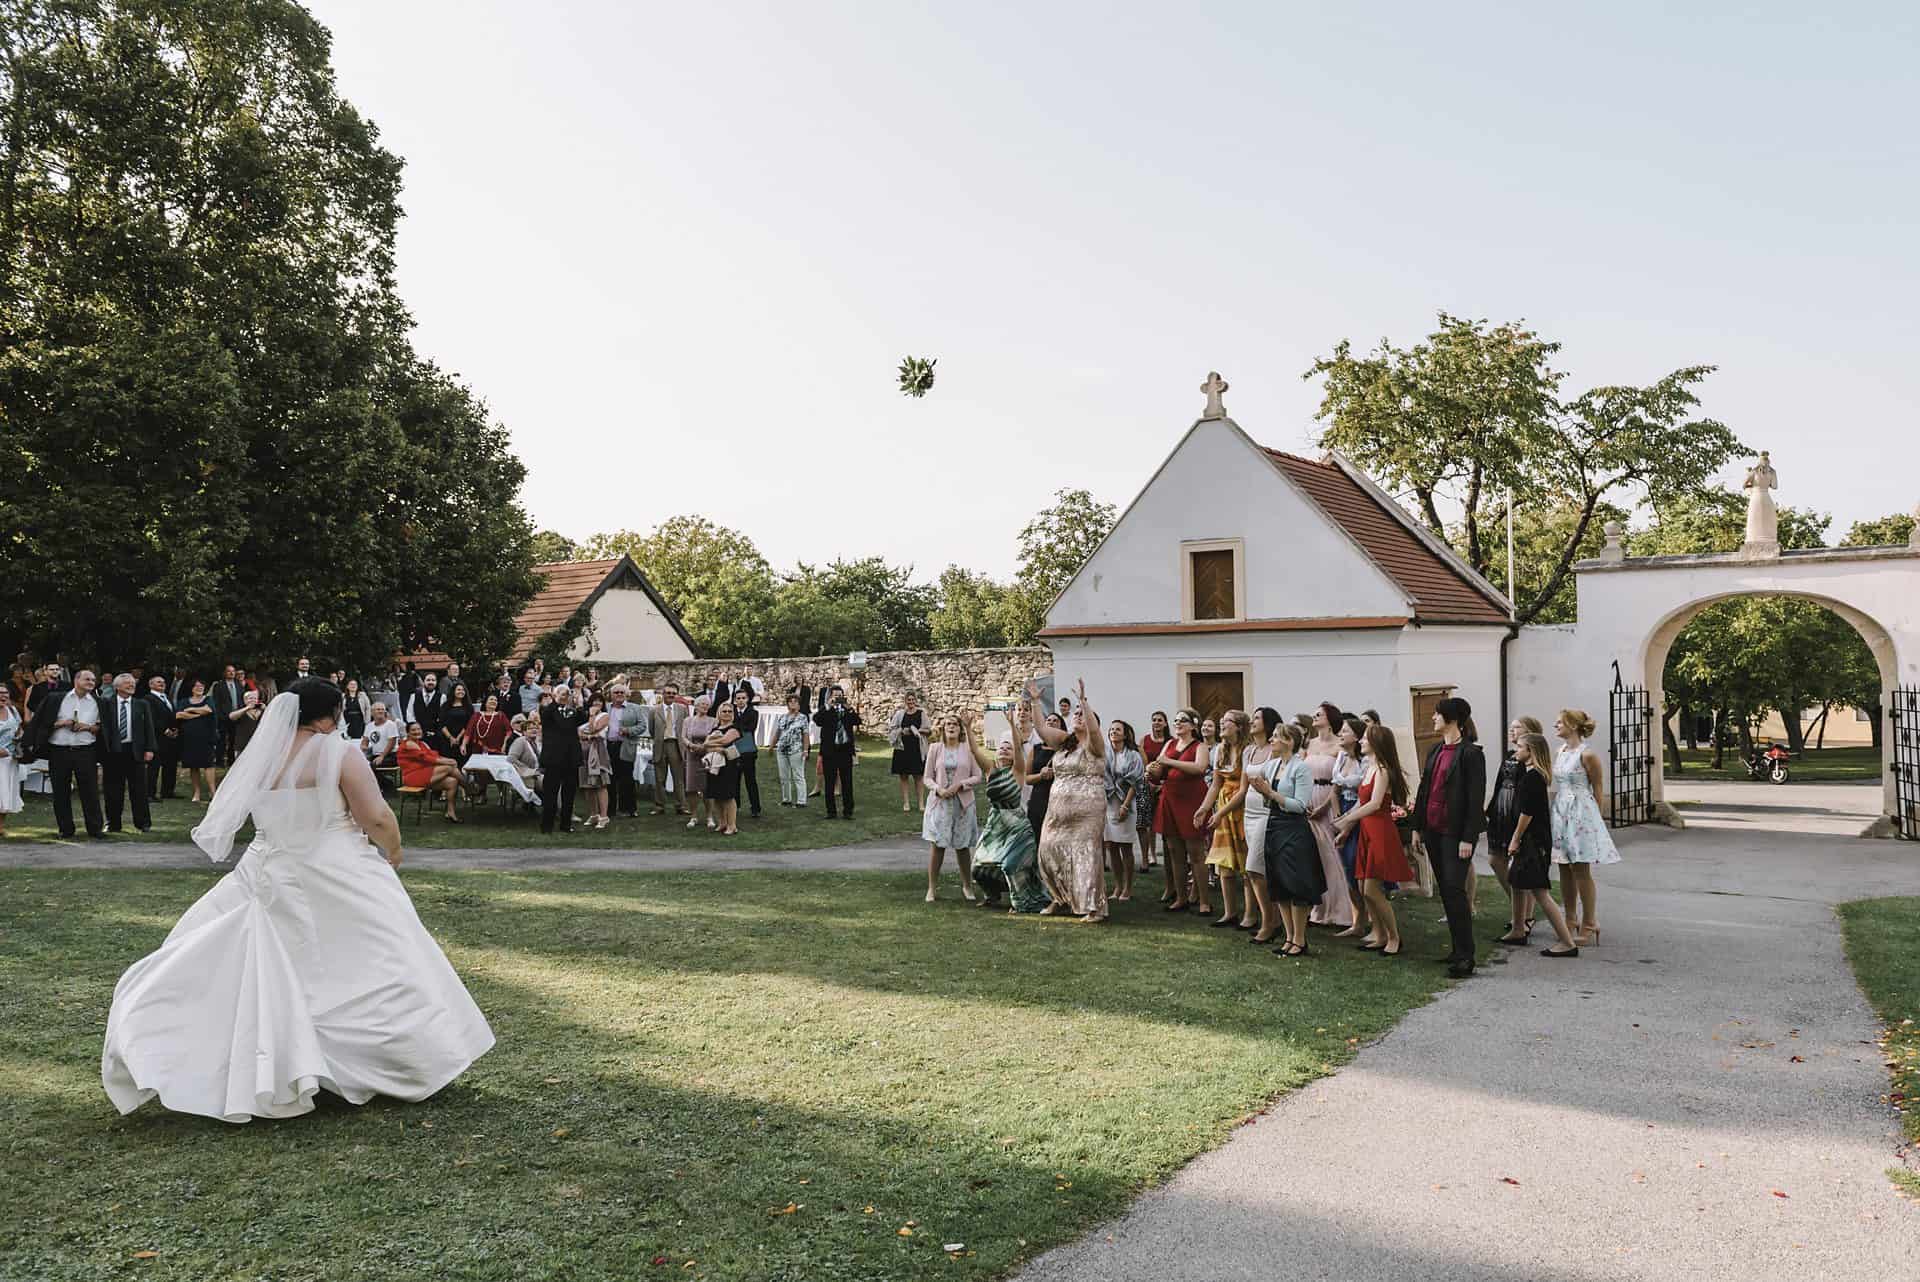 Eine Braut und ein Bräutigam werfen vor einer Menschenmenge einen Frisbee.